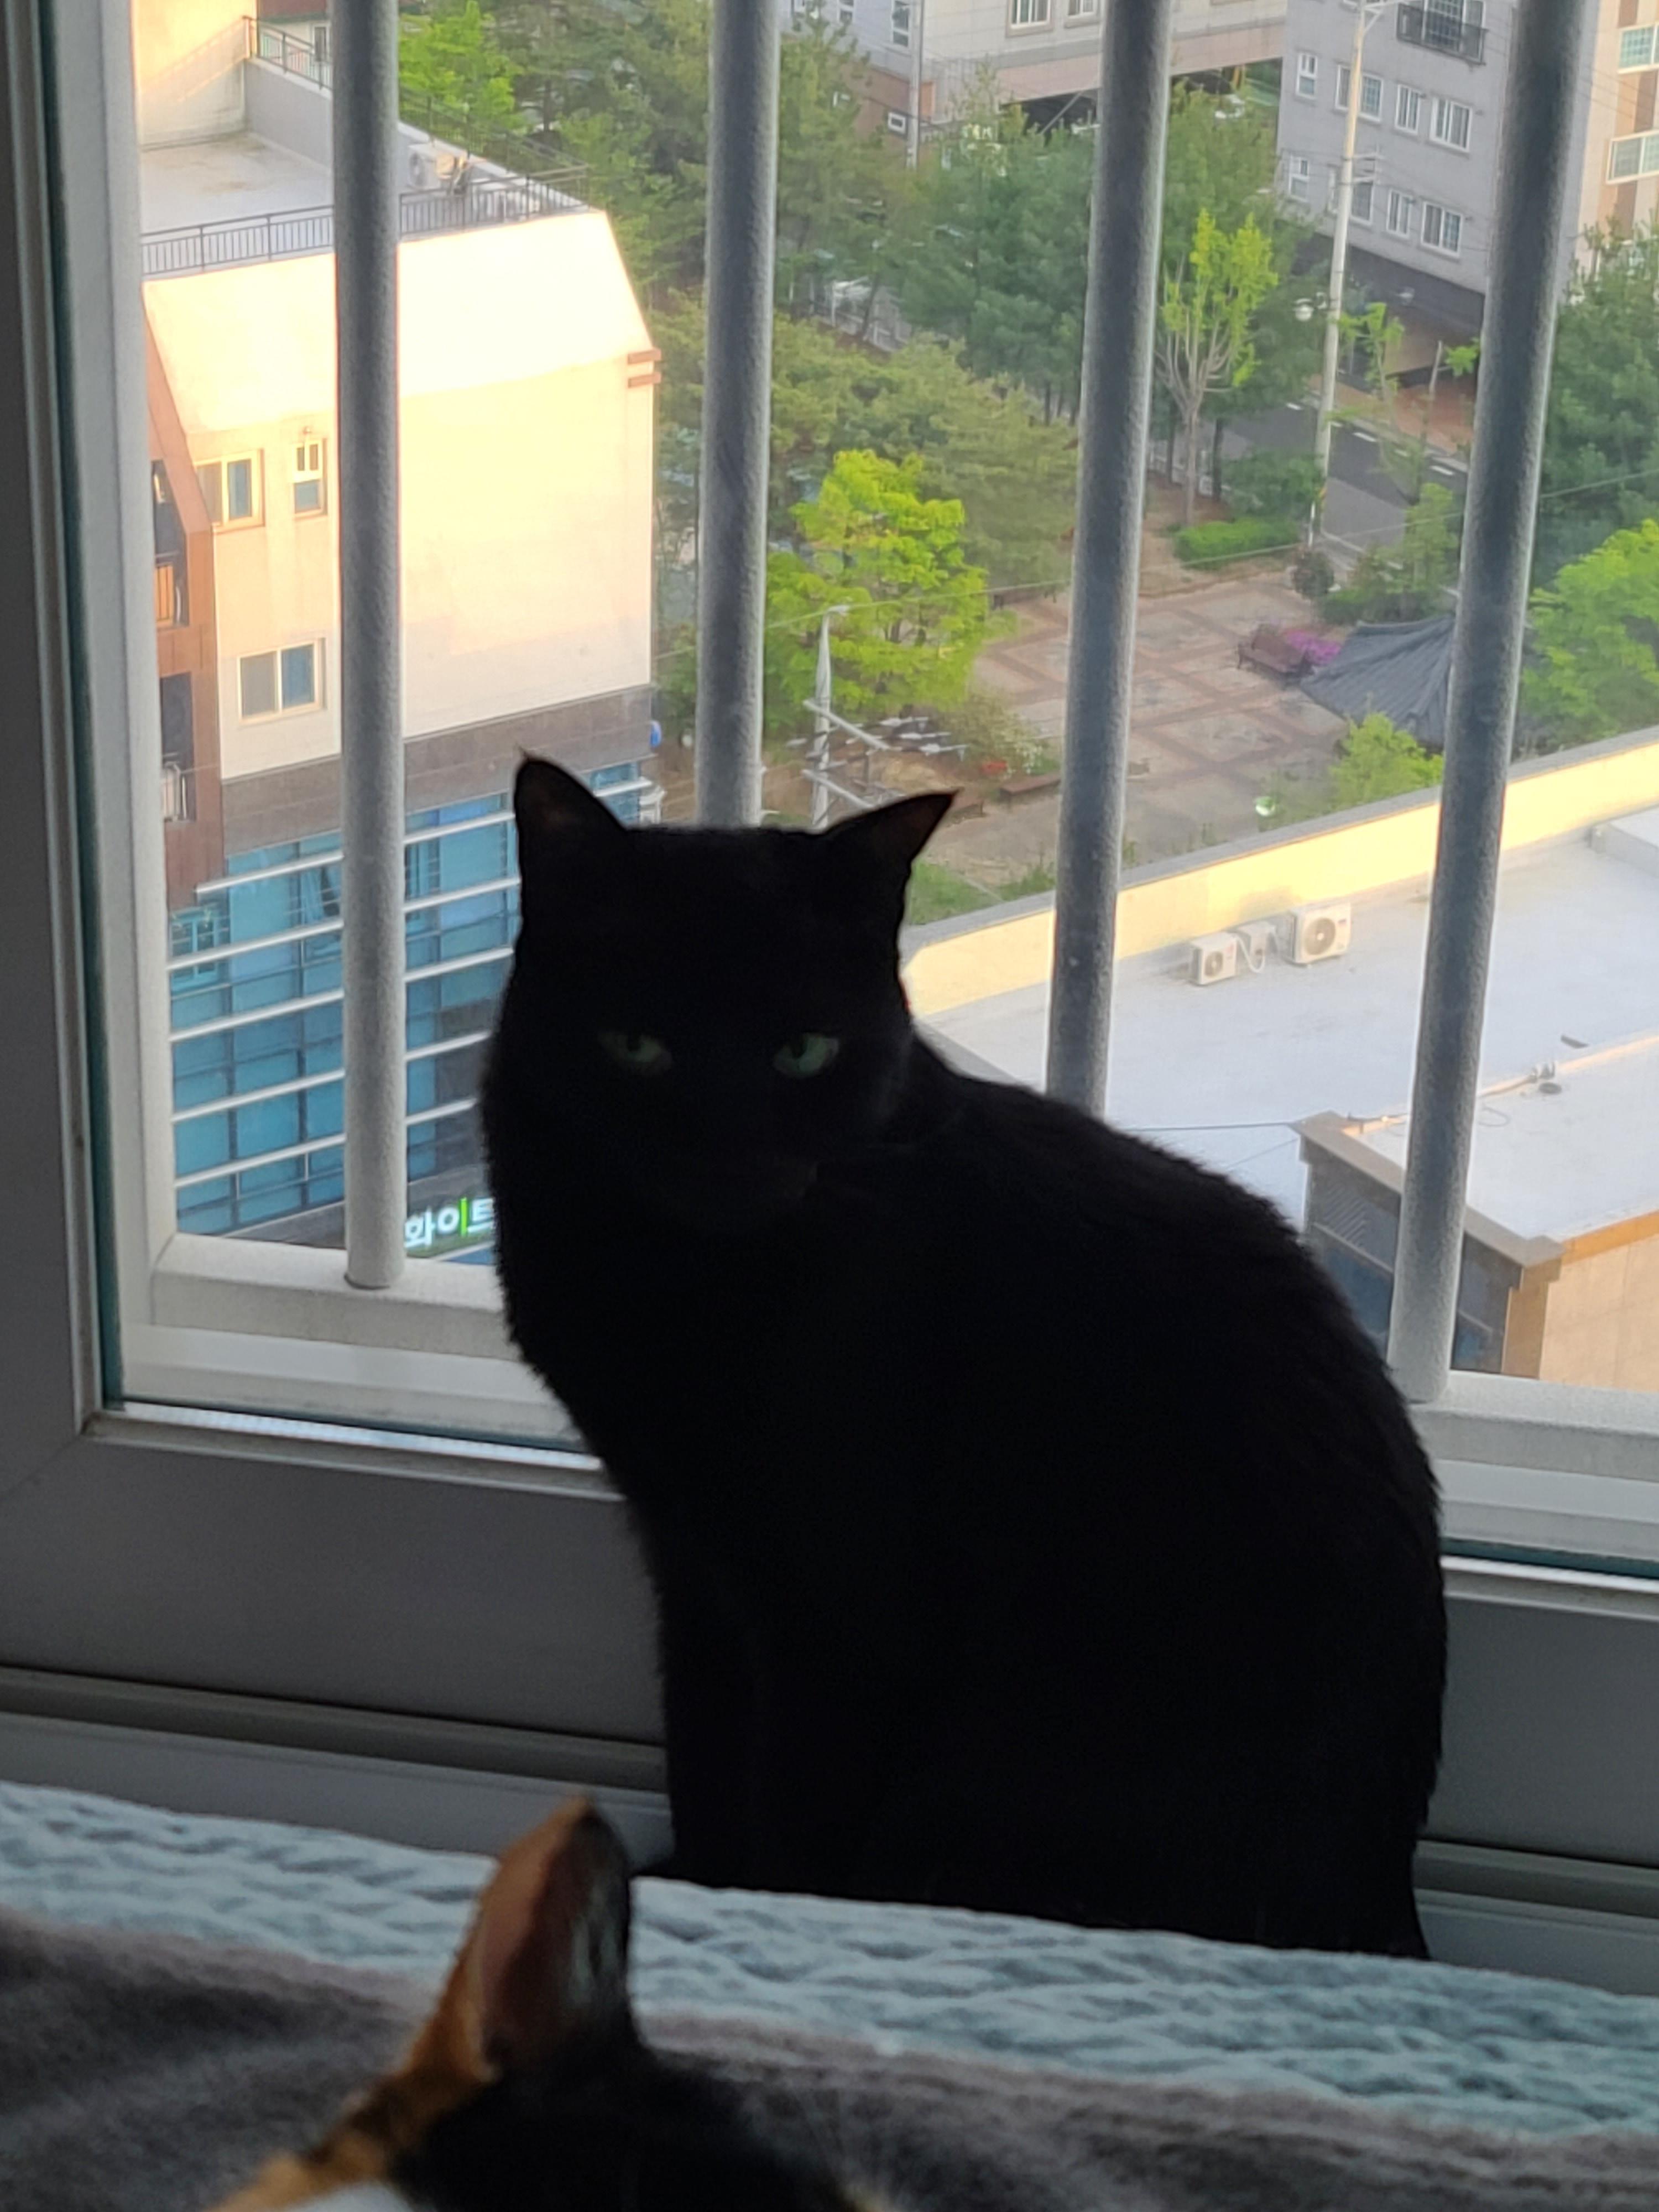 창밖구경을 좋아하는 고양이들의 낙상사고와 가출 예방을 위한 방묘창의 필요성.